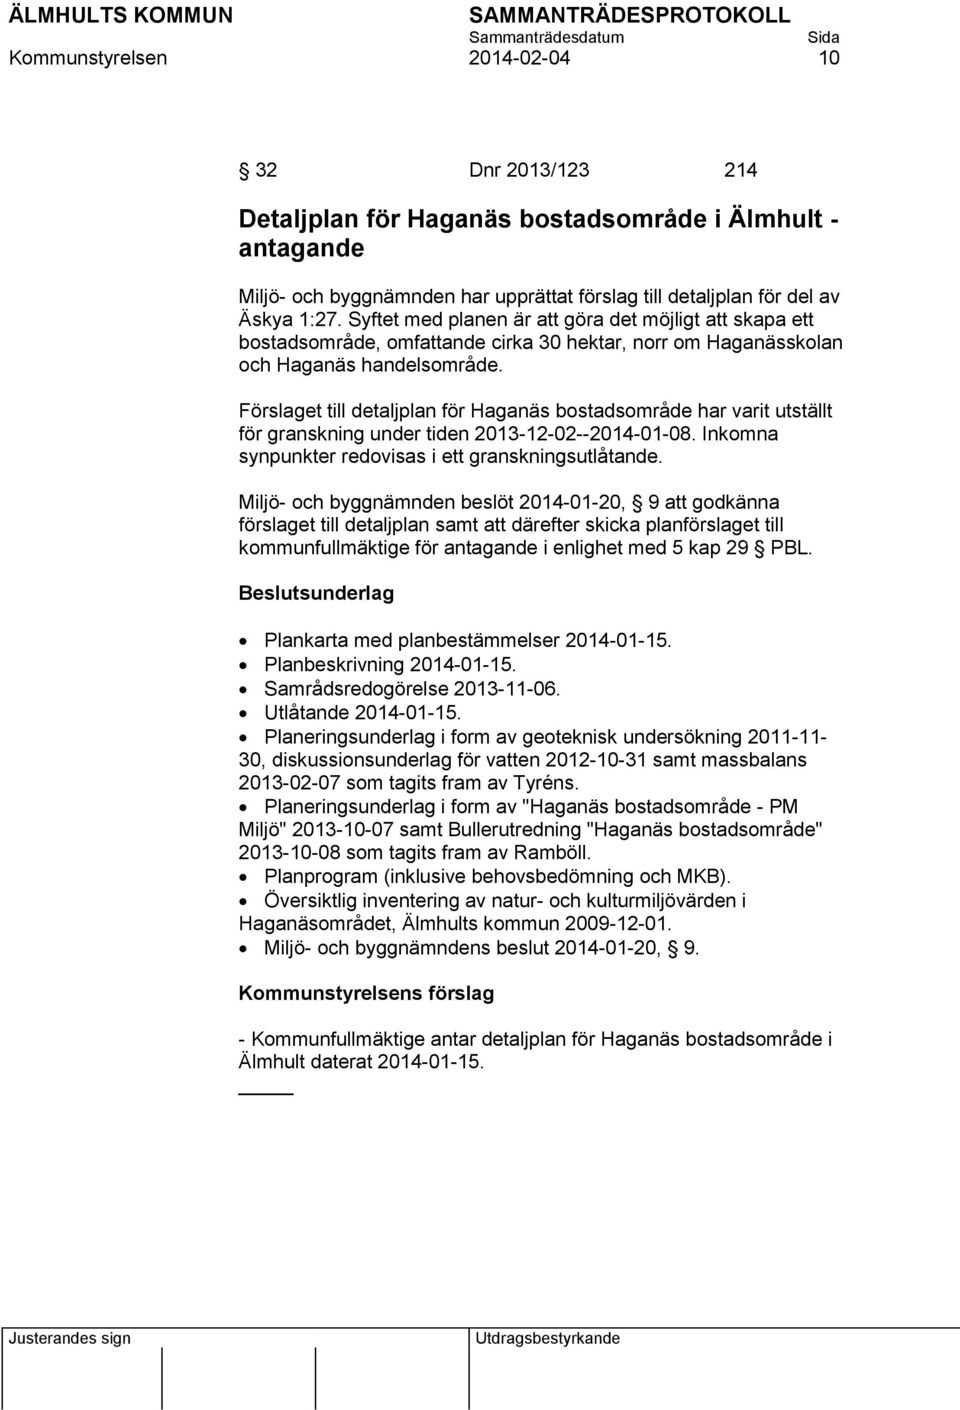 Förslaget till detaljplan för Haganäs bostadsområde har varit utställt för granskning under tiden 2013-12-02--2014-01-08. Inkomna synpunkter redovisas i ett granskningsutlåtande.